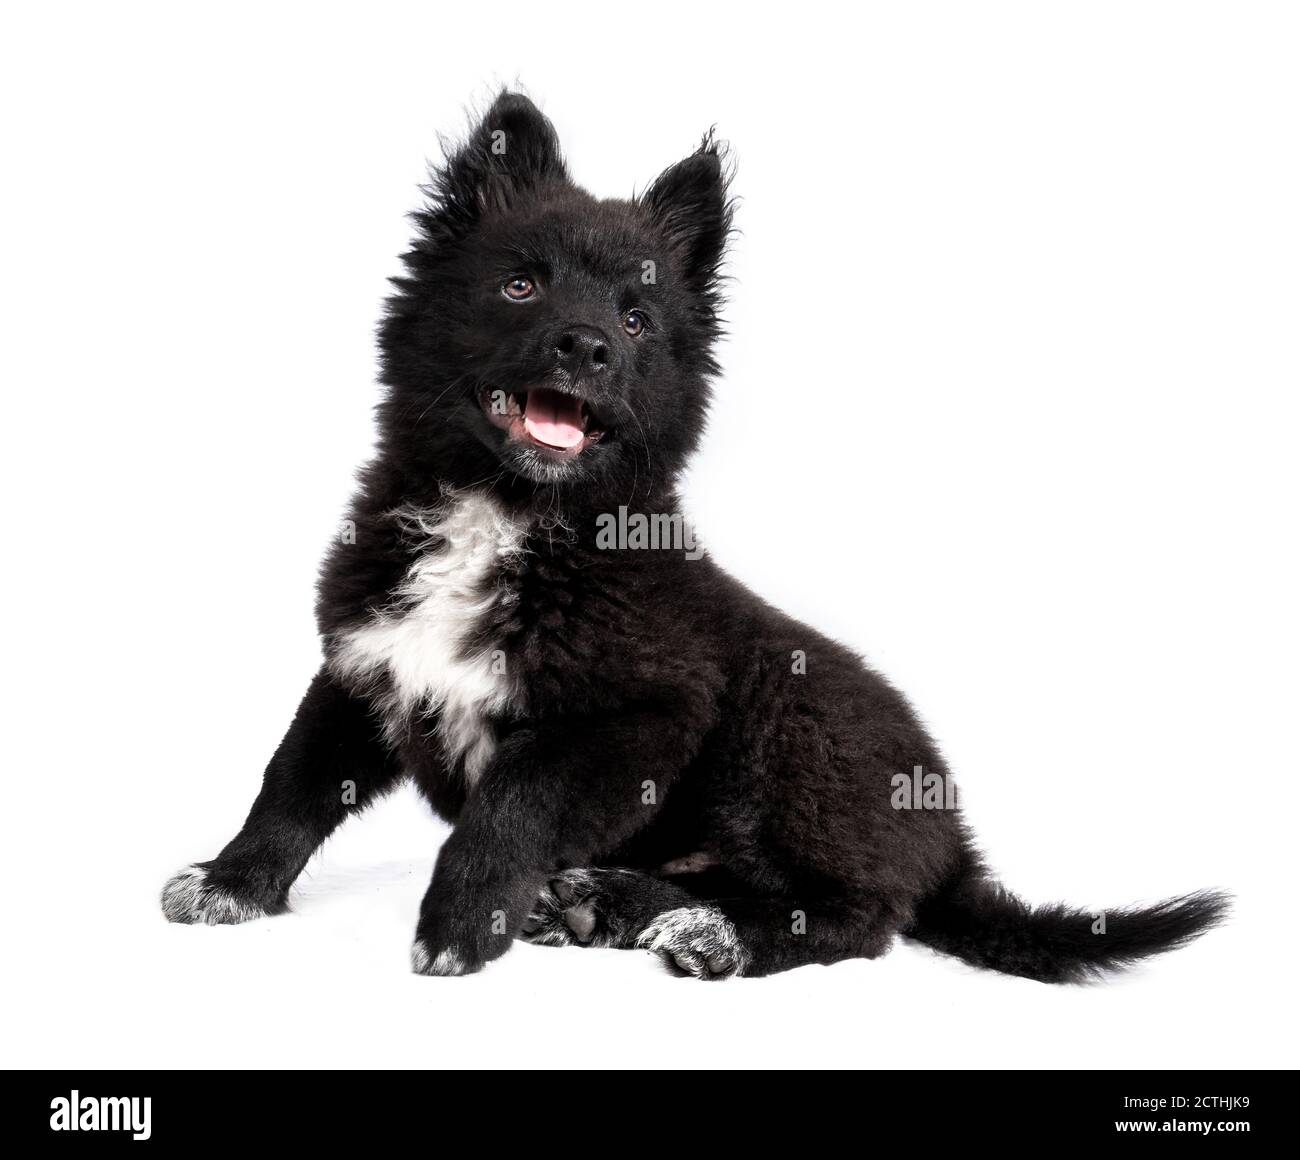 Adorable chiot moelleux noir assis sur le côté. chien de 12 semaines. Portrait complet d'un chiot de race mixte Berger australien x Keeshond. Isolé Banque D'Images